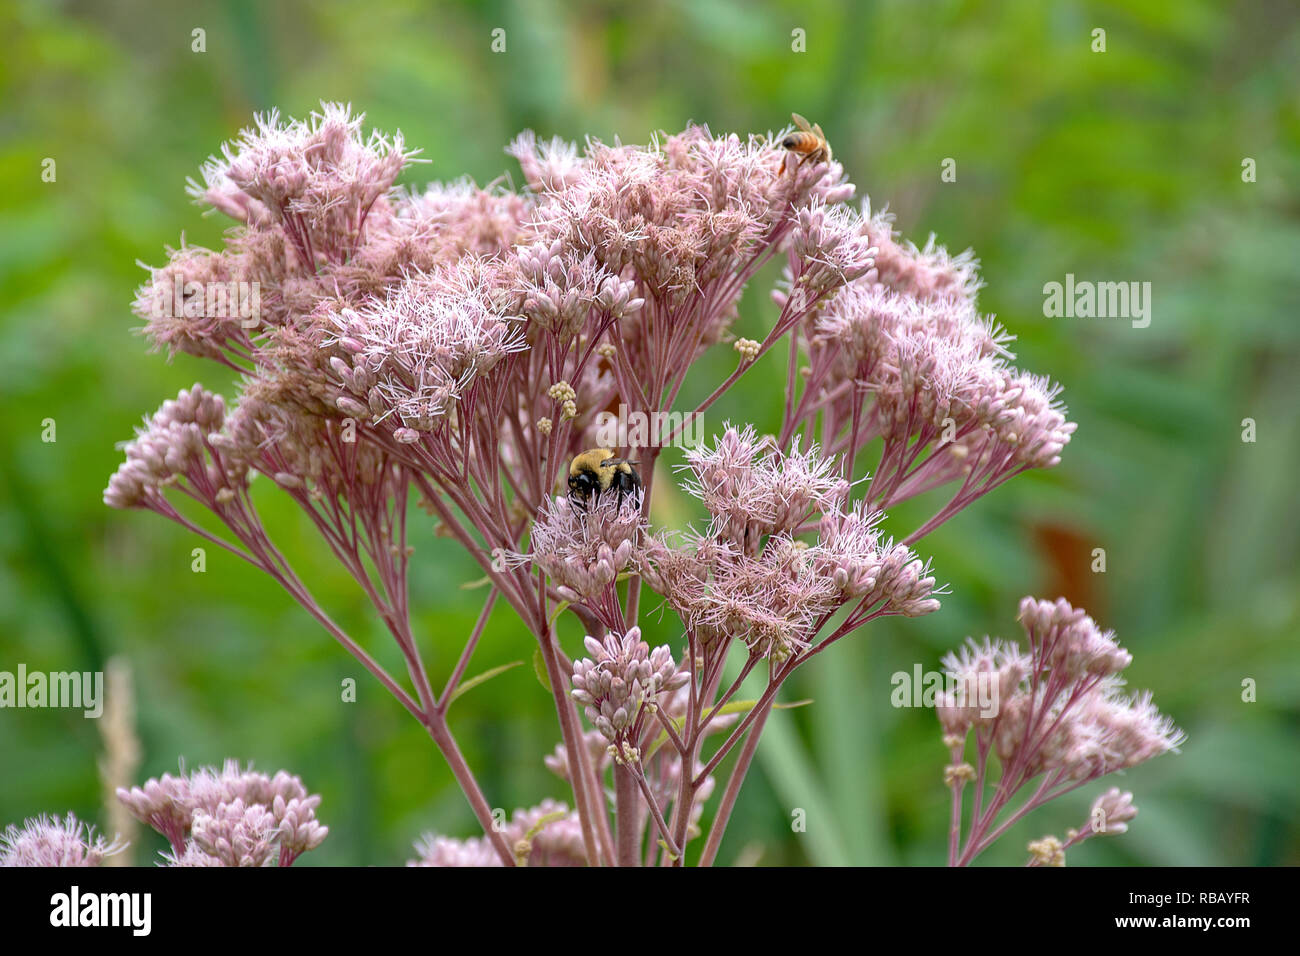 Bourdon et abeille sur rose plante asclépiade Banque D'Images